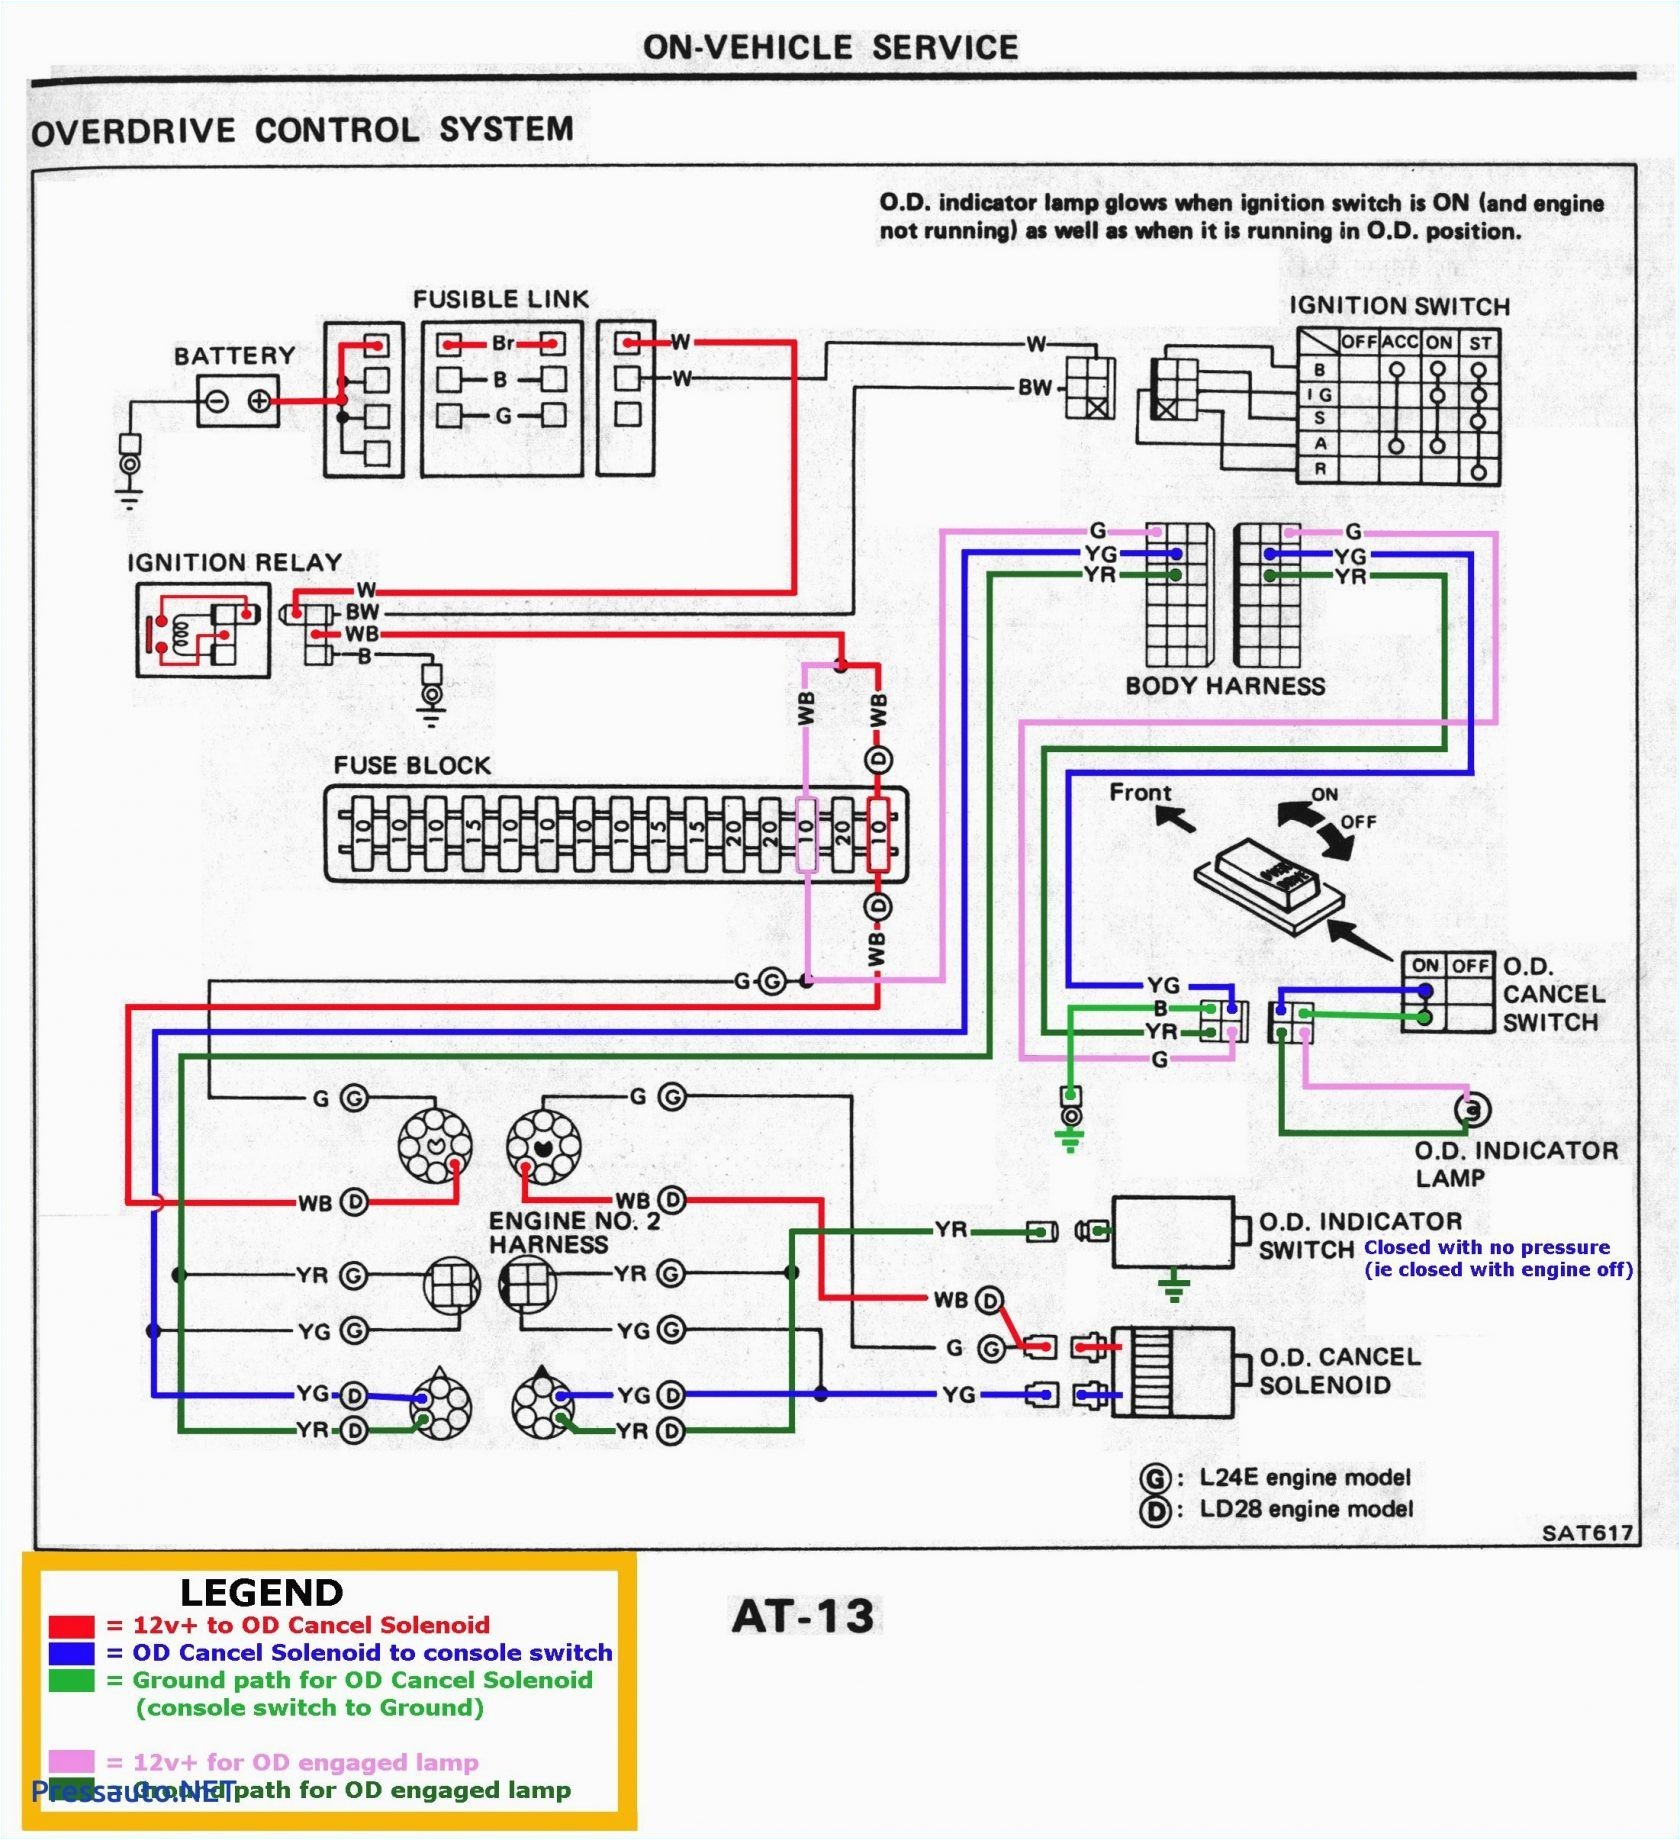 2006 ford F150 Trailer Wiring Diagram 2006 F150 Trailer Wiring Diagram Wiring Diagram toolbox